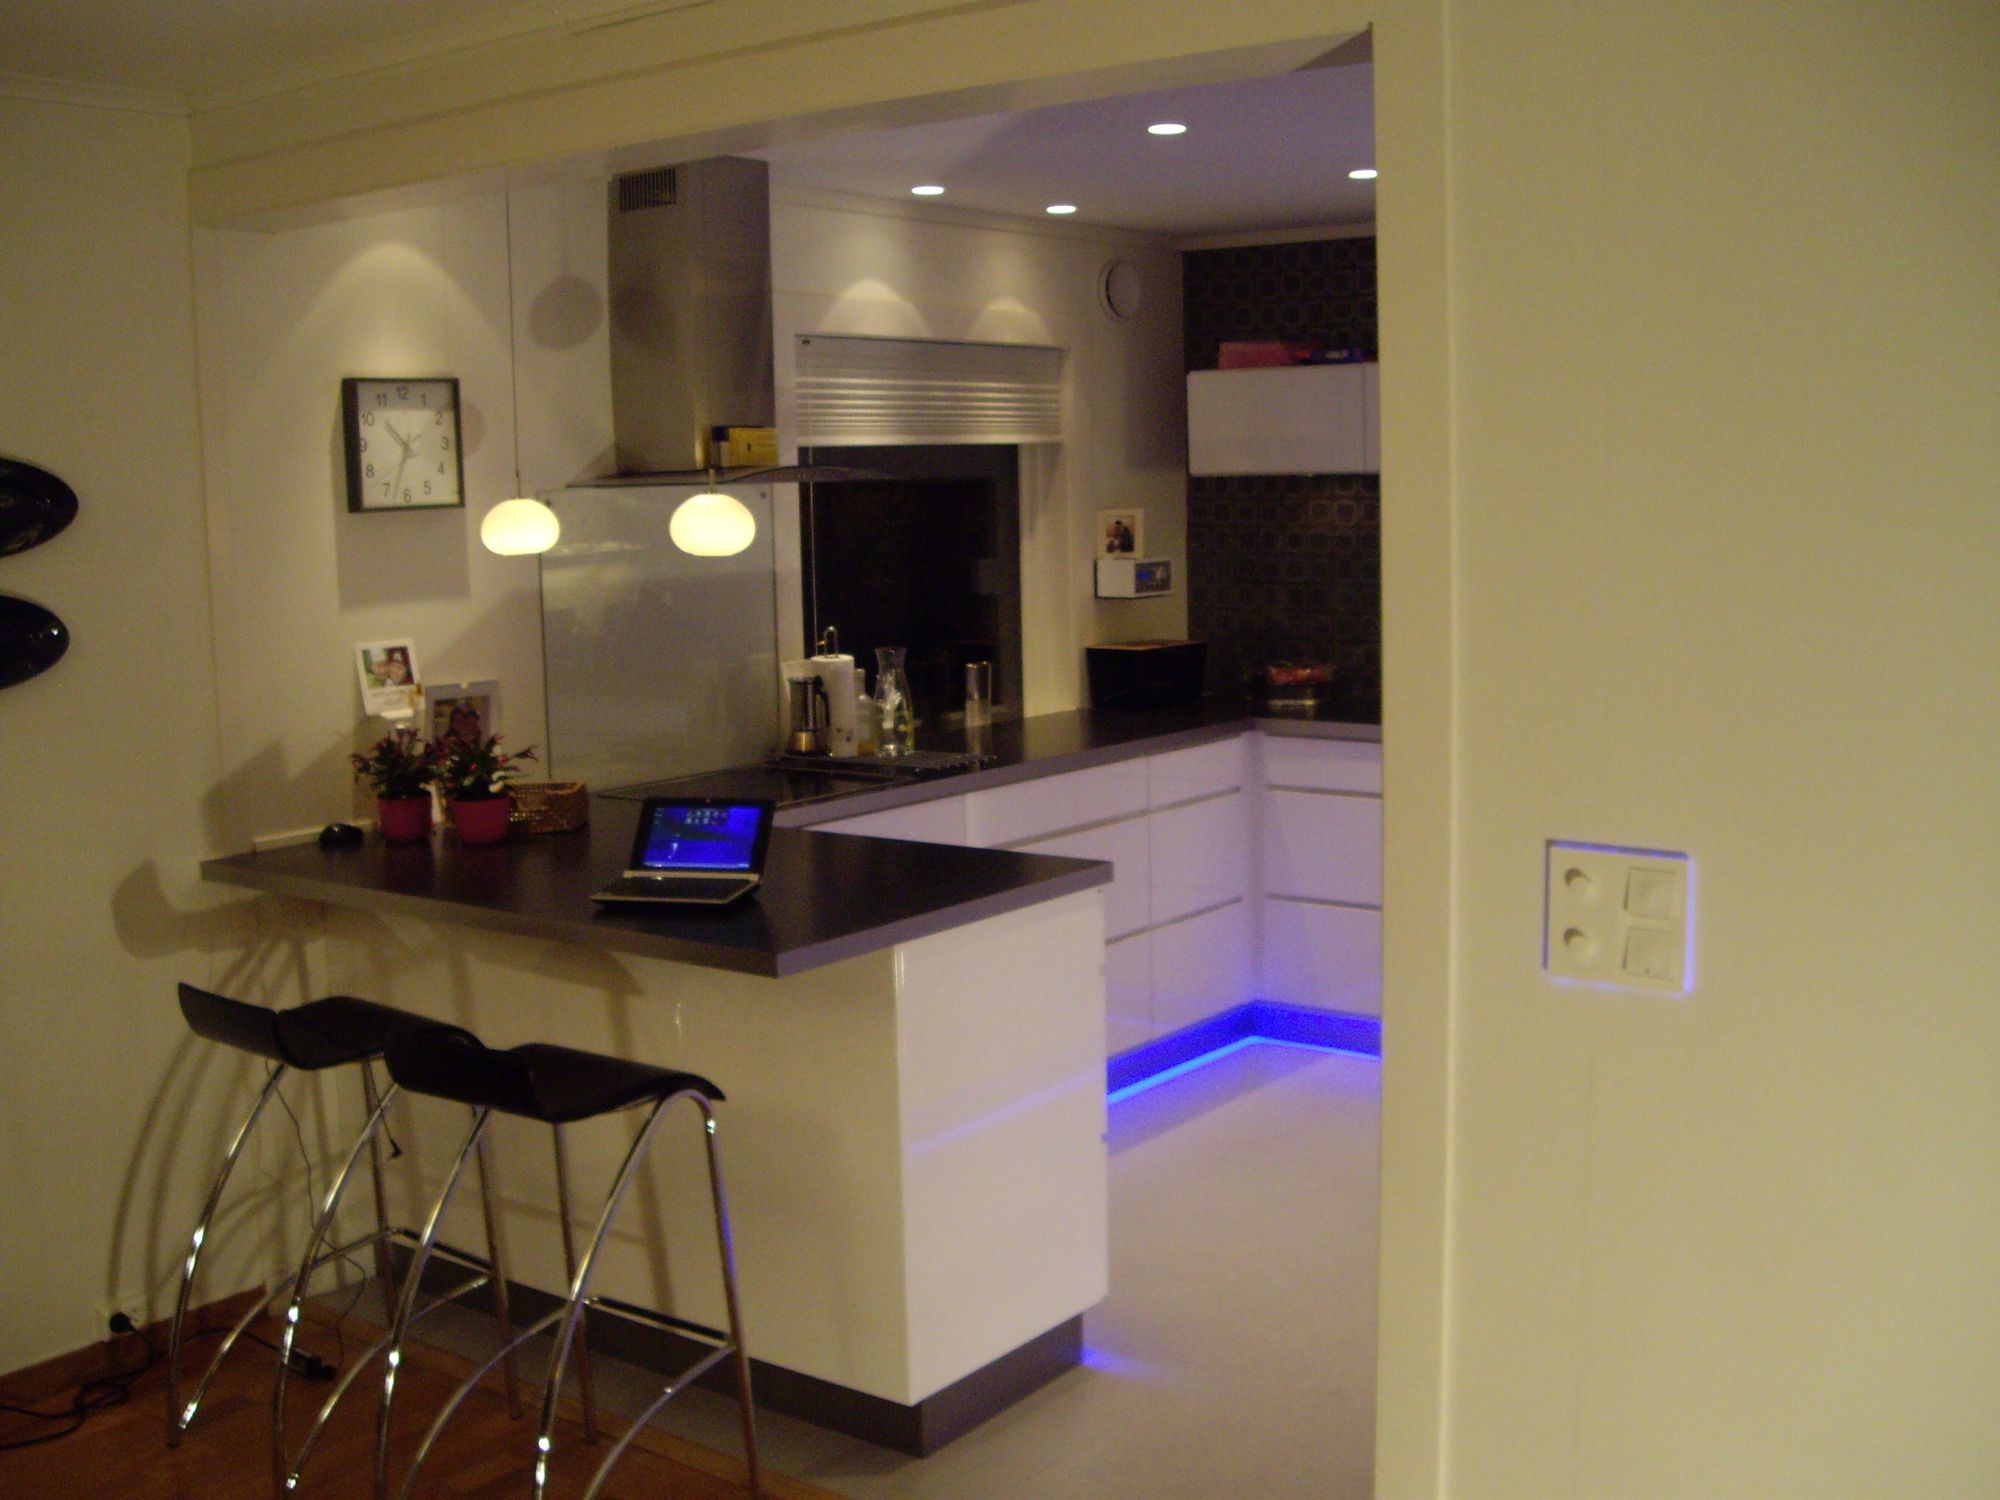 Belysning på kjøkken på undersiden av kjøkkenbenker